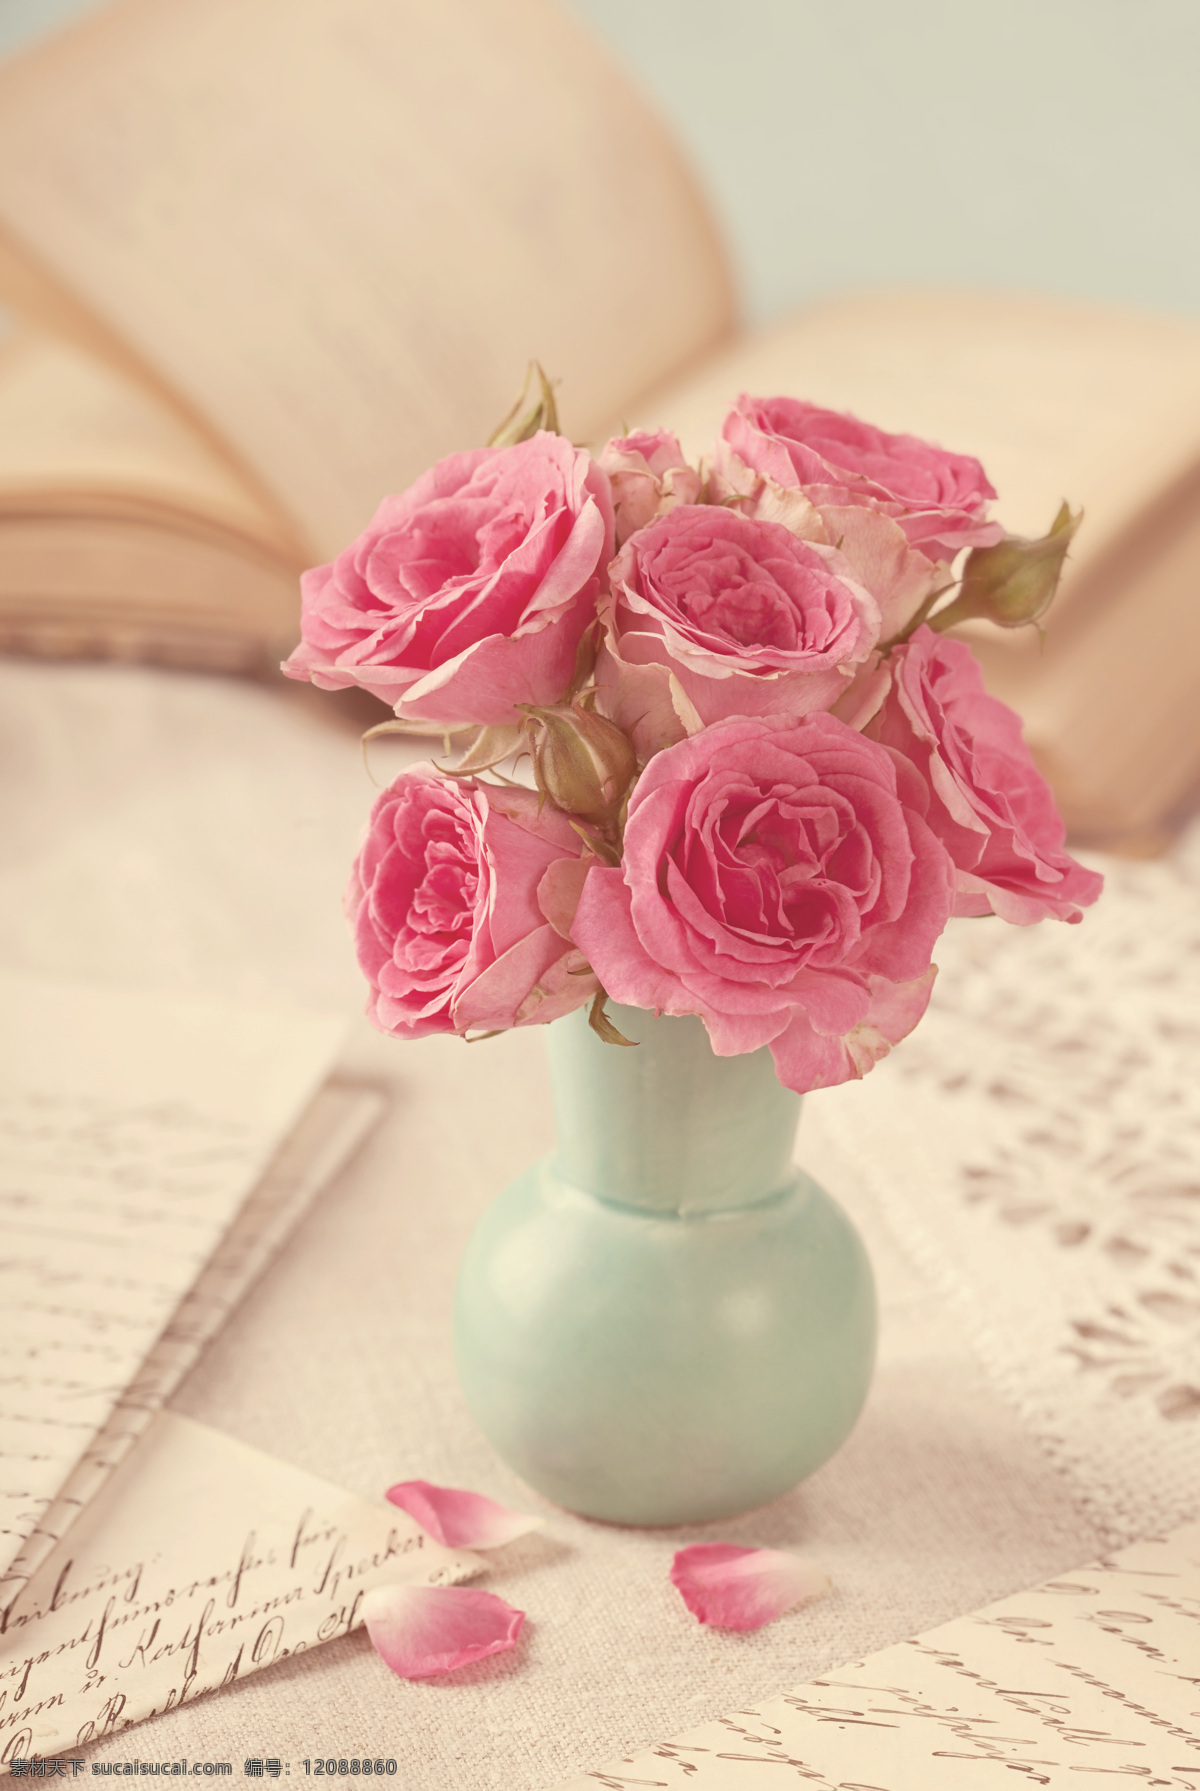 复古玫瑰花 复古花朵 花束 桌子 花瓶 书 手稿 花卉 满天星 玫瑰花 植物 花朵 复古 怀旧 古朴 老旧 花草 生物世界